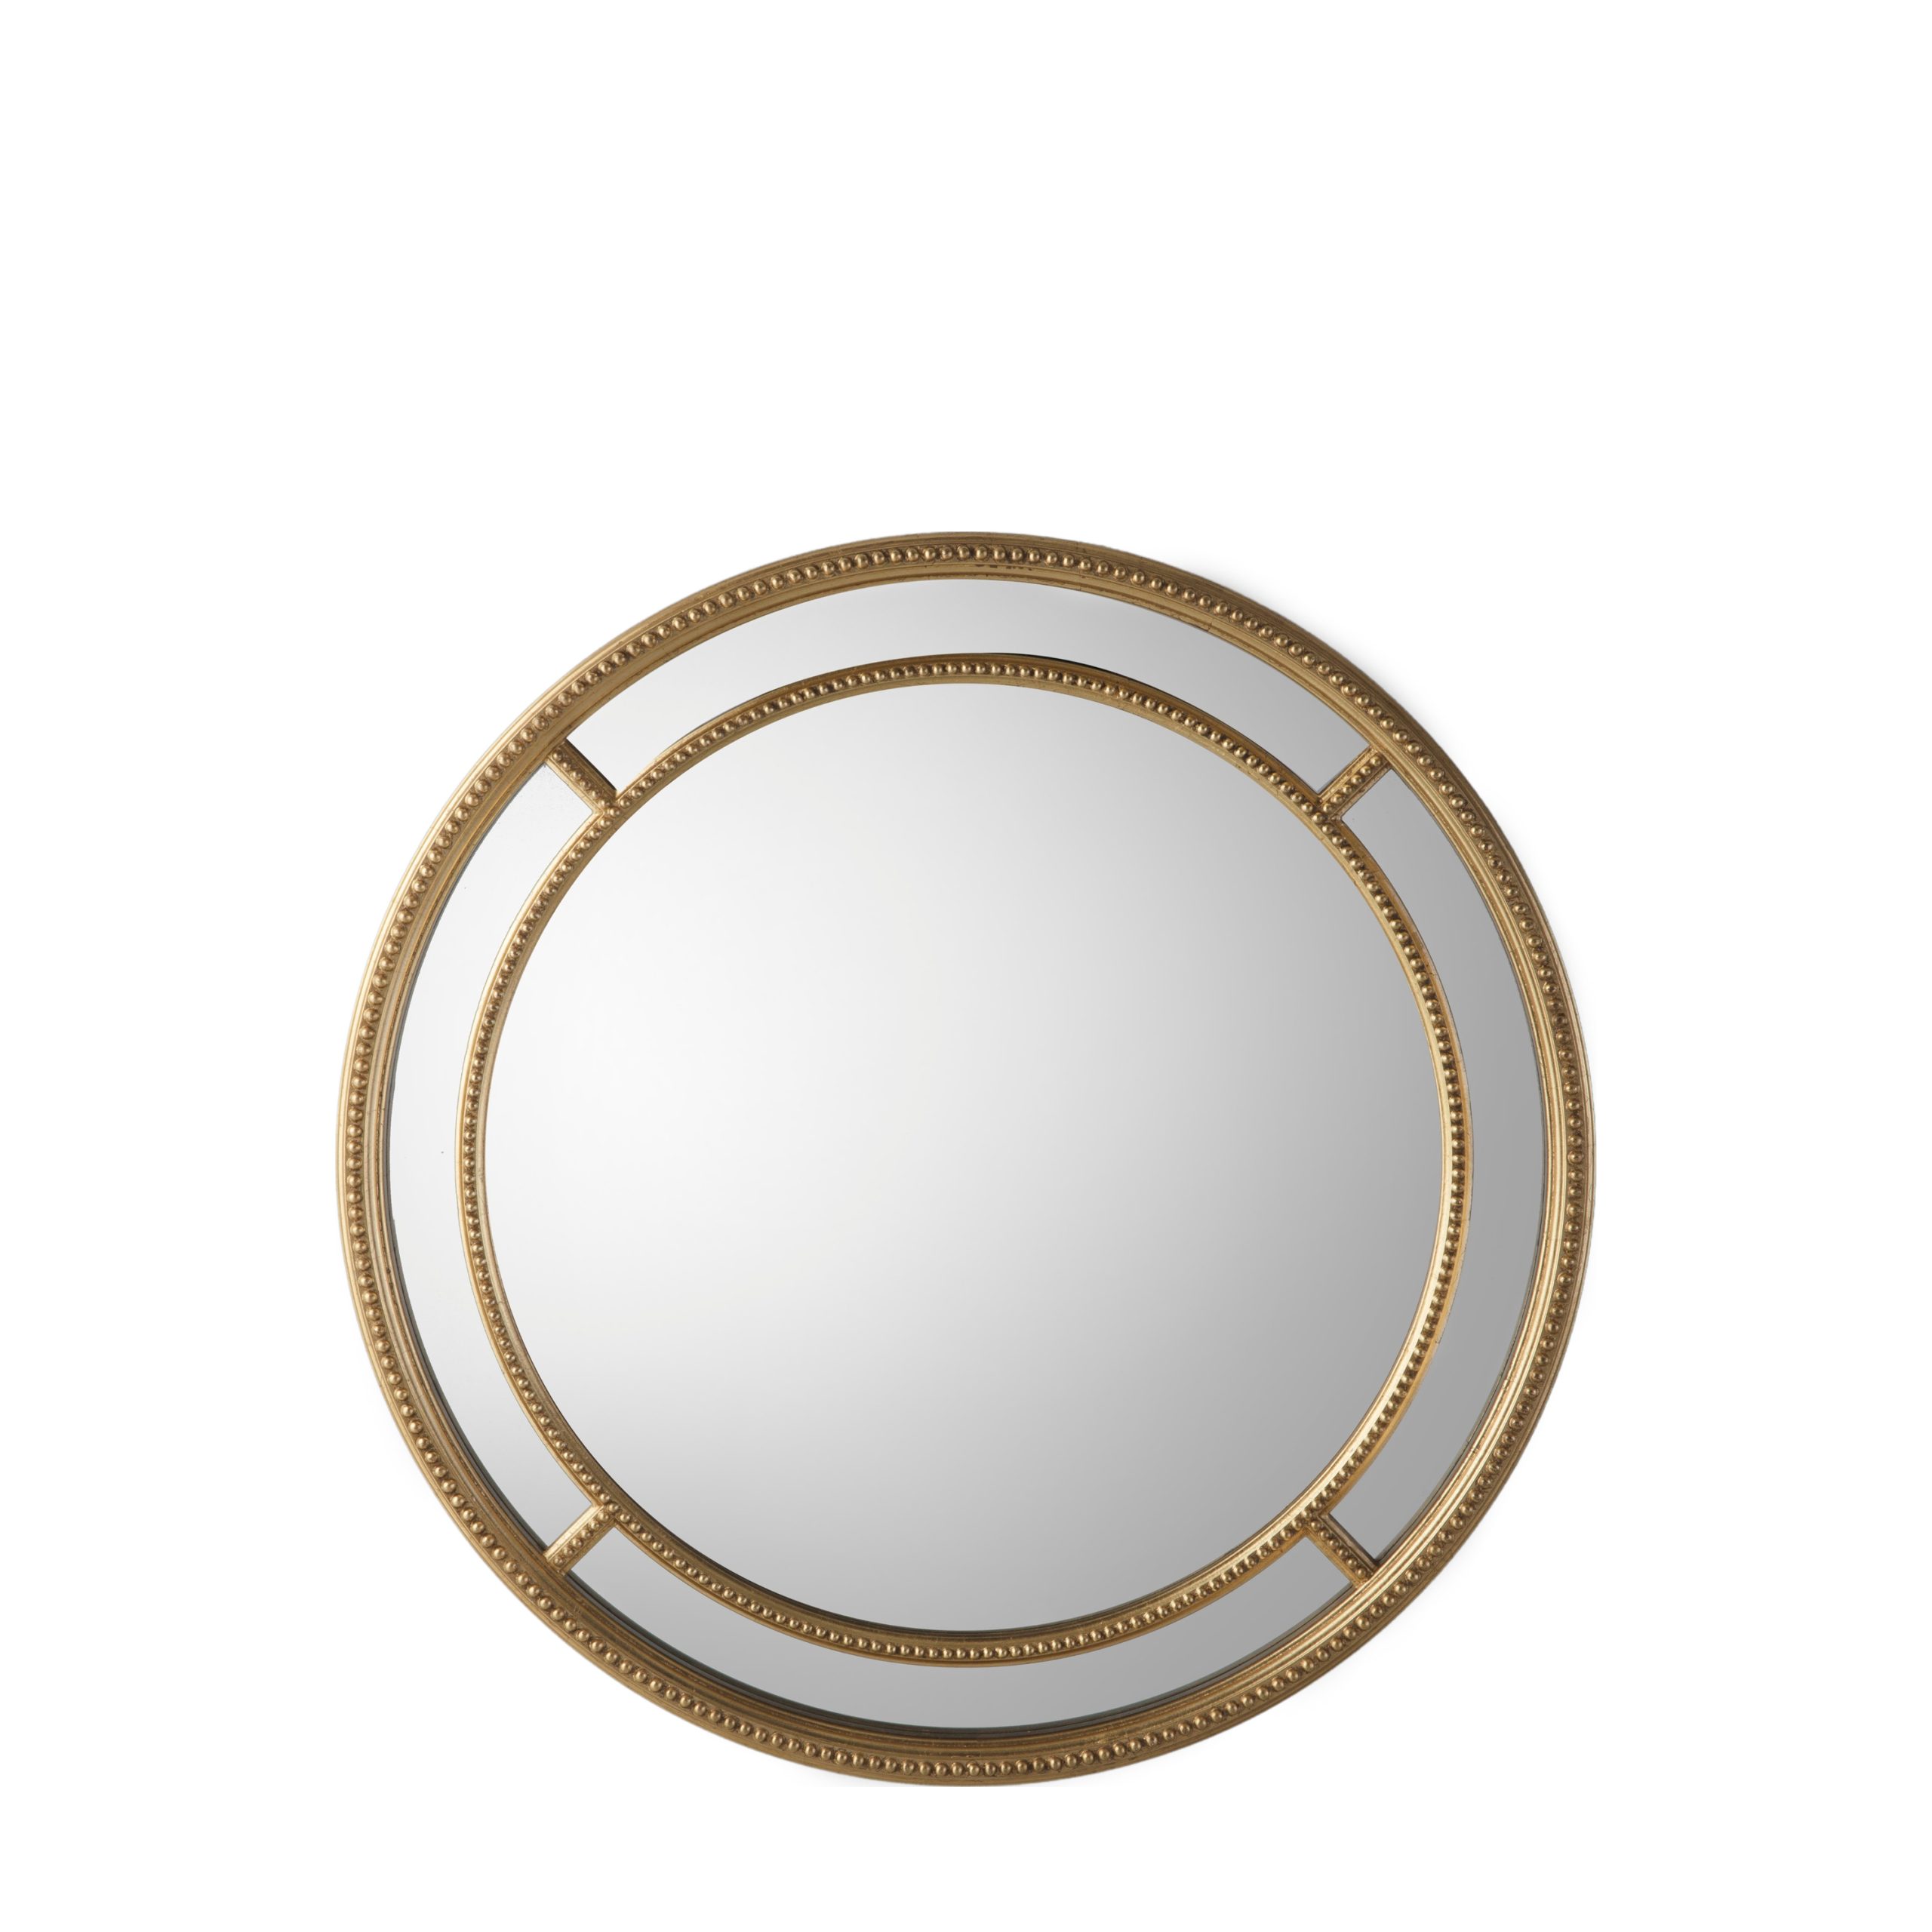 Gallery Direct Sinatra Round Mirror Gold